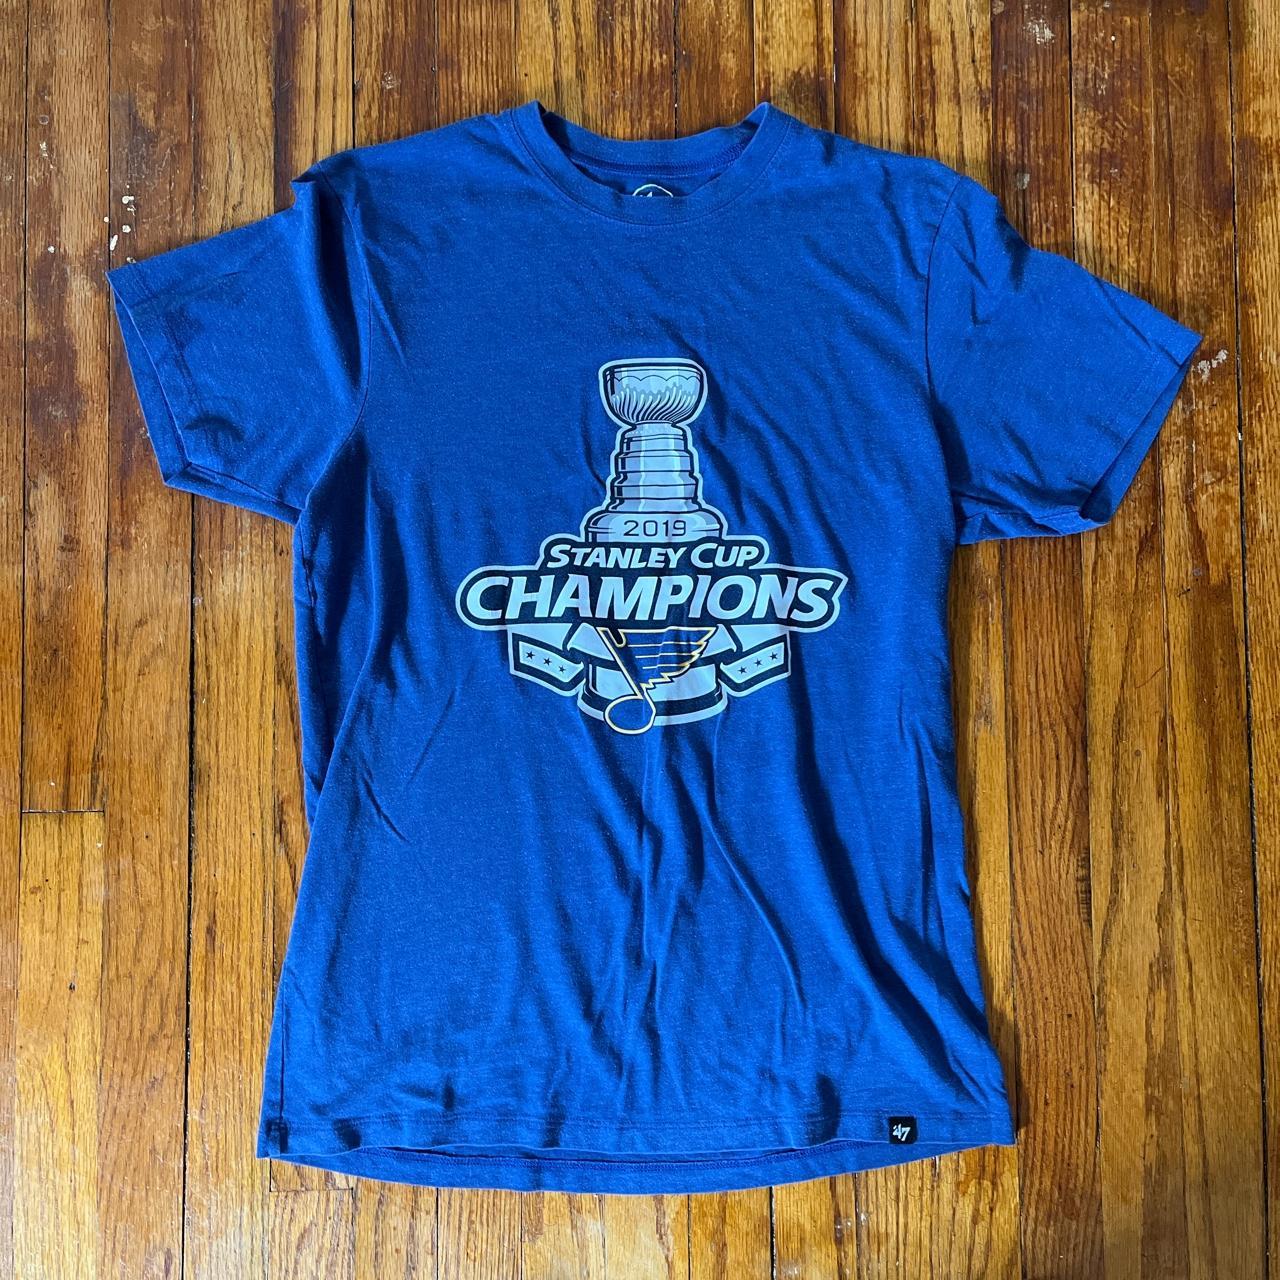 St. Louis blues 2019 Stanley Cup Champions - Depop